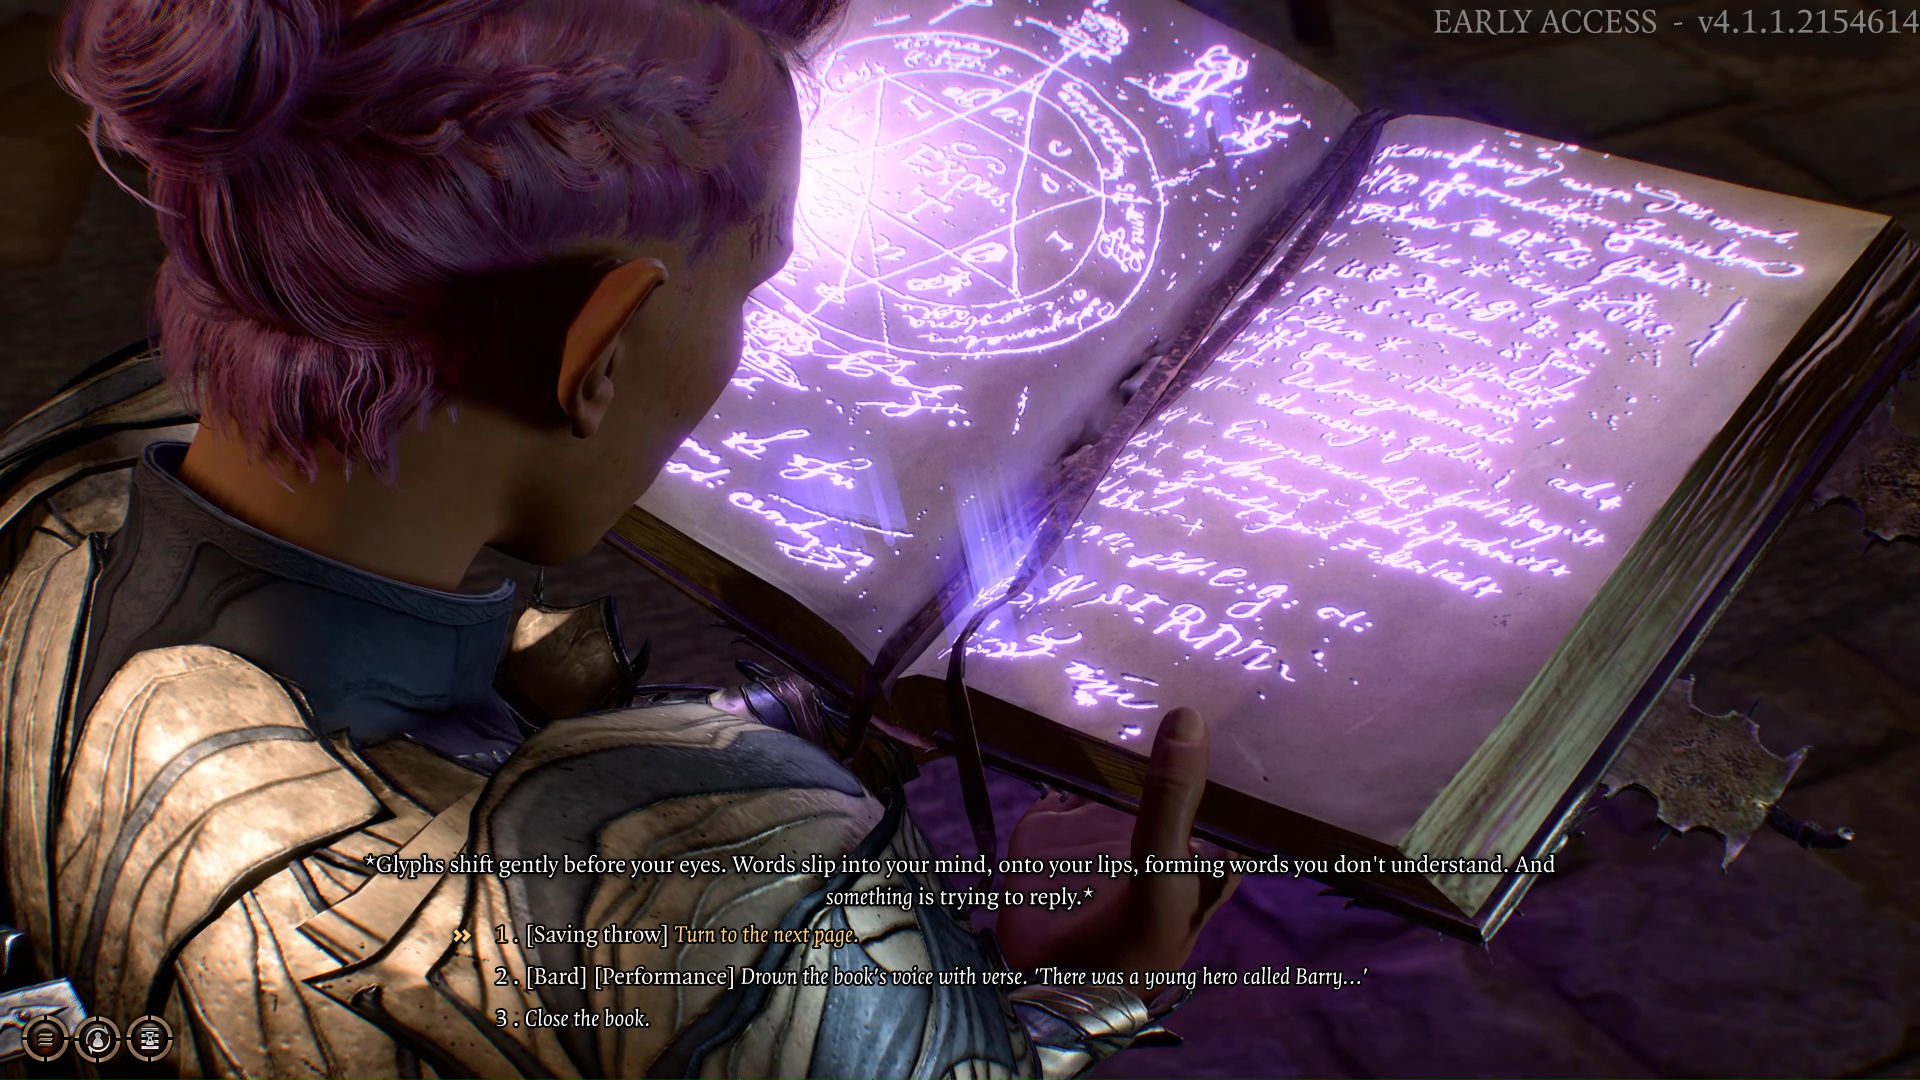 Gnomi lukee taikakirjaa Baldur's Gate 3:ssa.